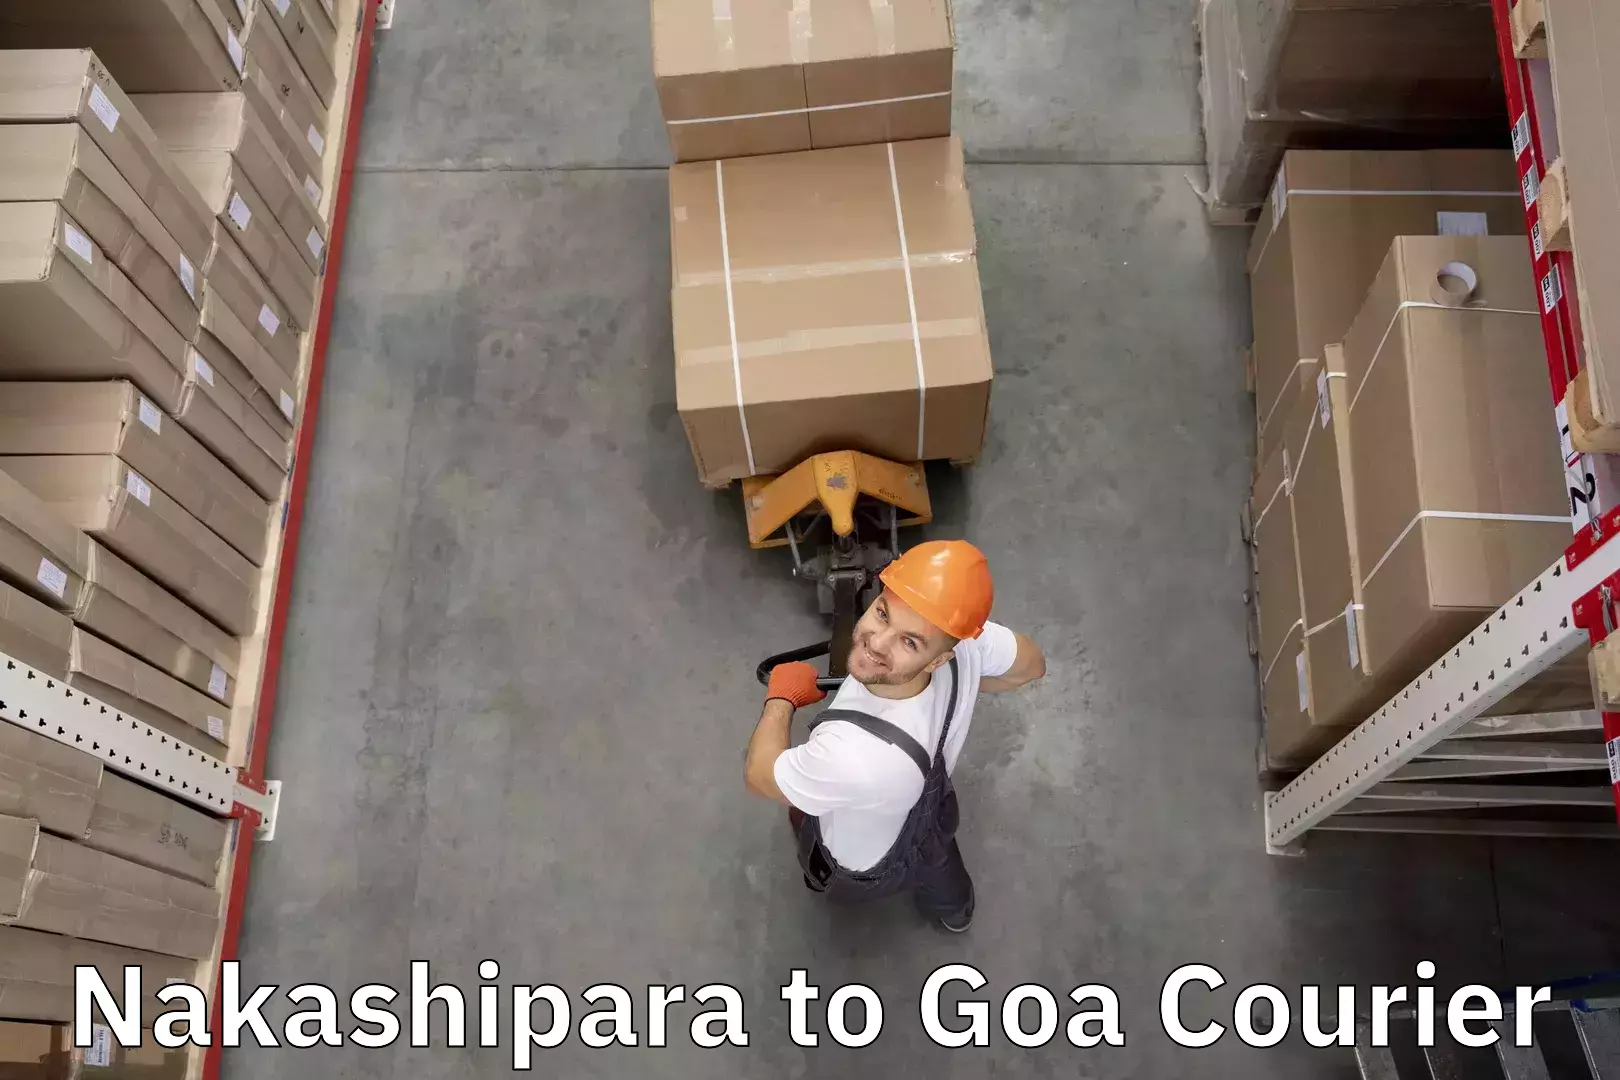 Luggage transport operations Nakashipara to South Goa